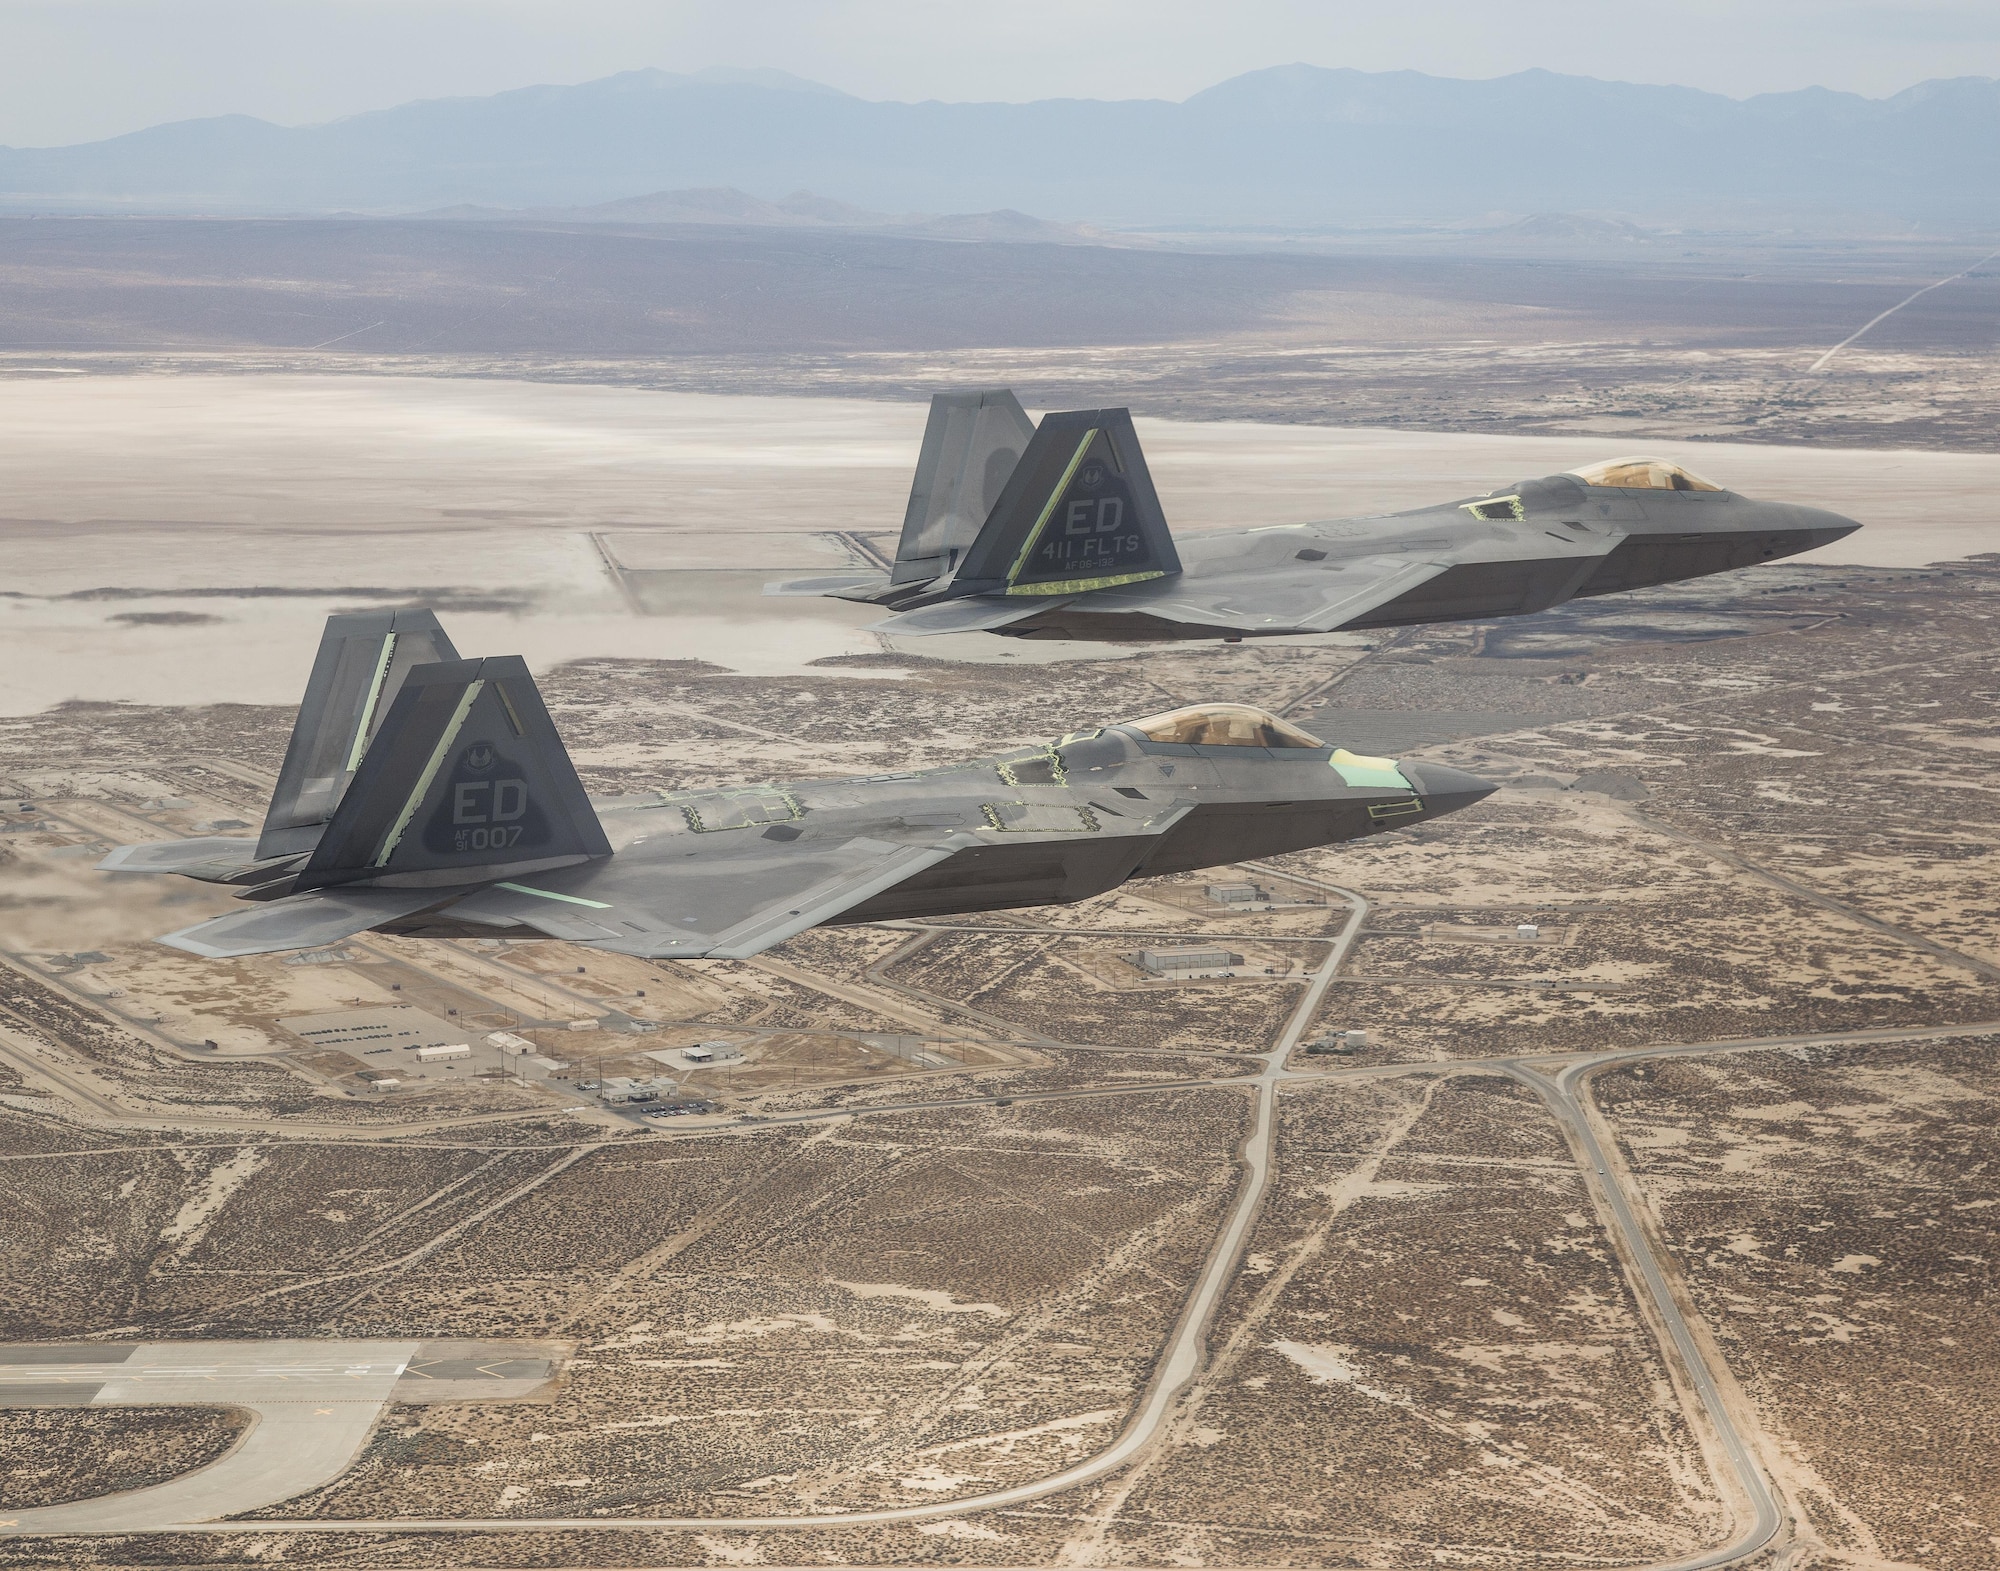 (Courtesy photo by Chad Bellay/Lockheed Martin)